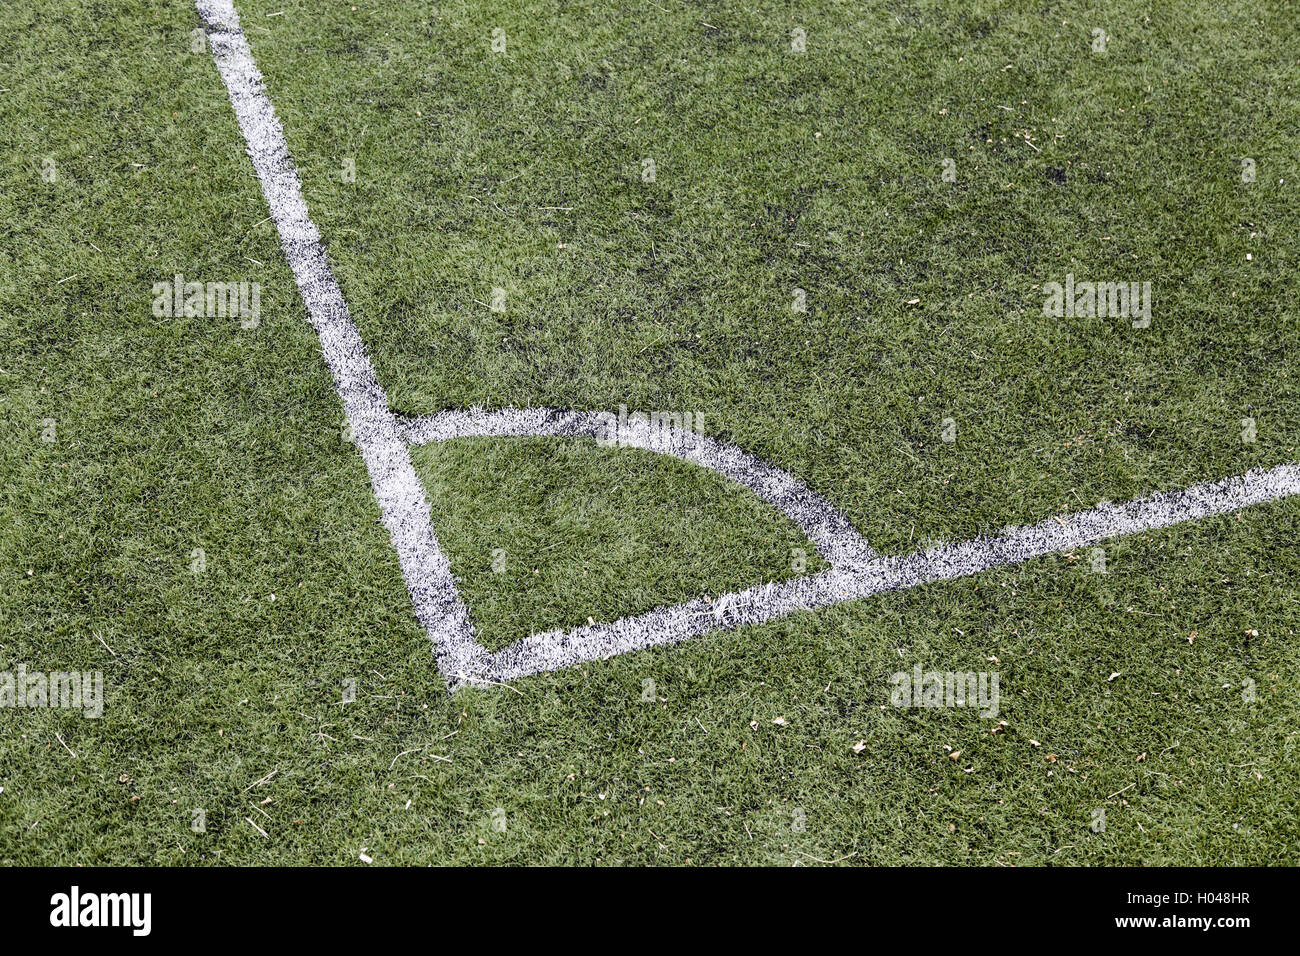 Coin d'un terrain de football, détail d'un terrain de sport Banque D'Images